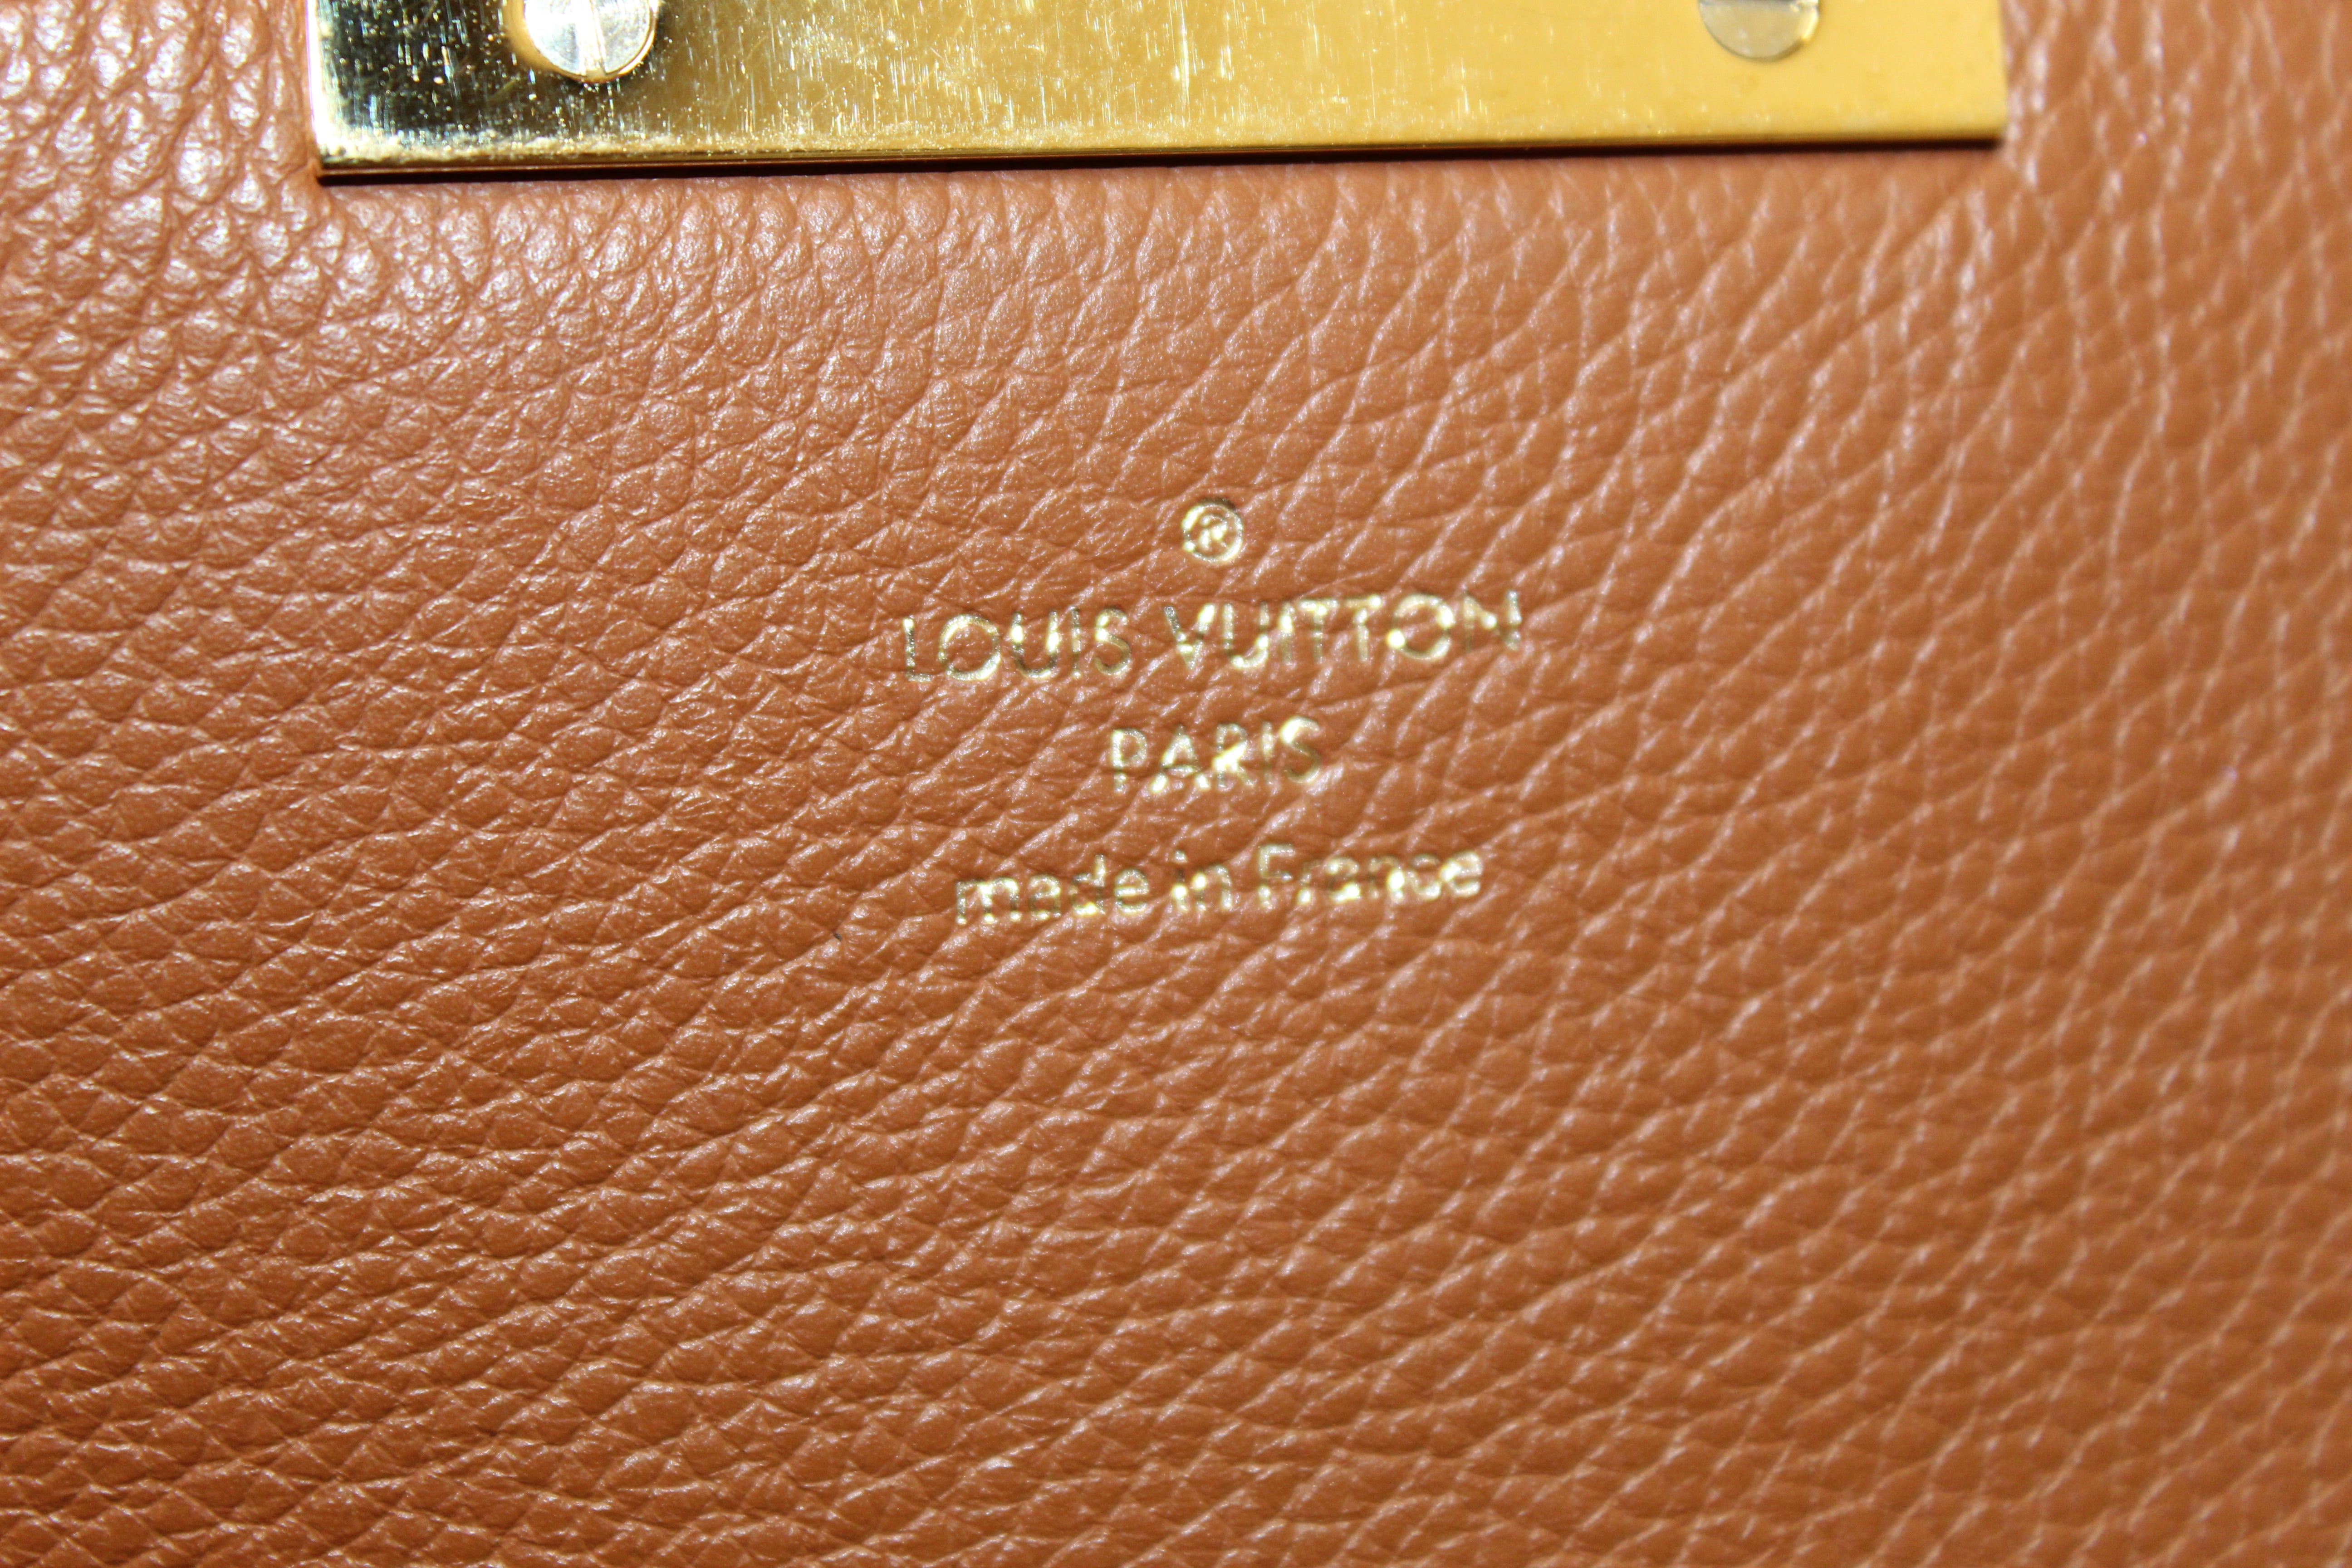 Louis Vuitton Women Shoulder bags Brown, Camel Color Synthetic